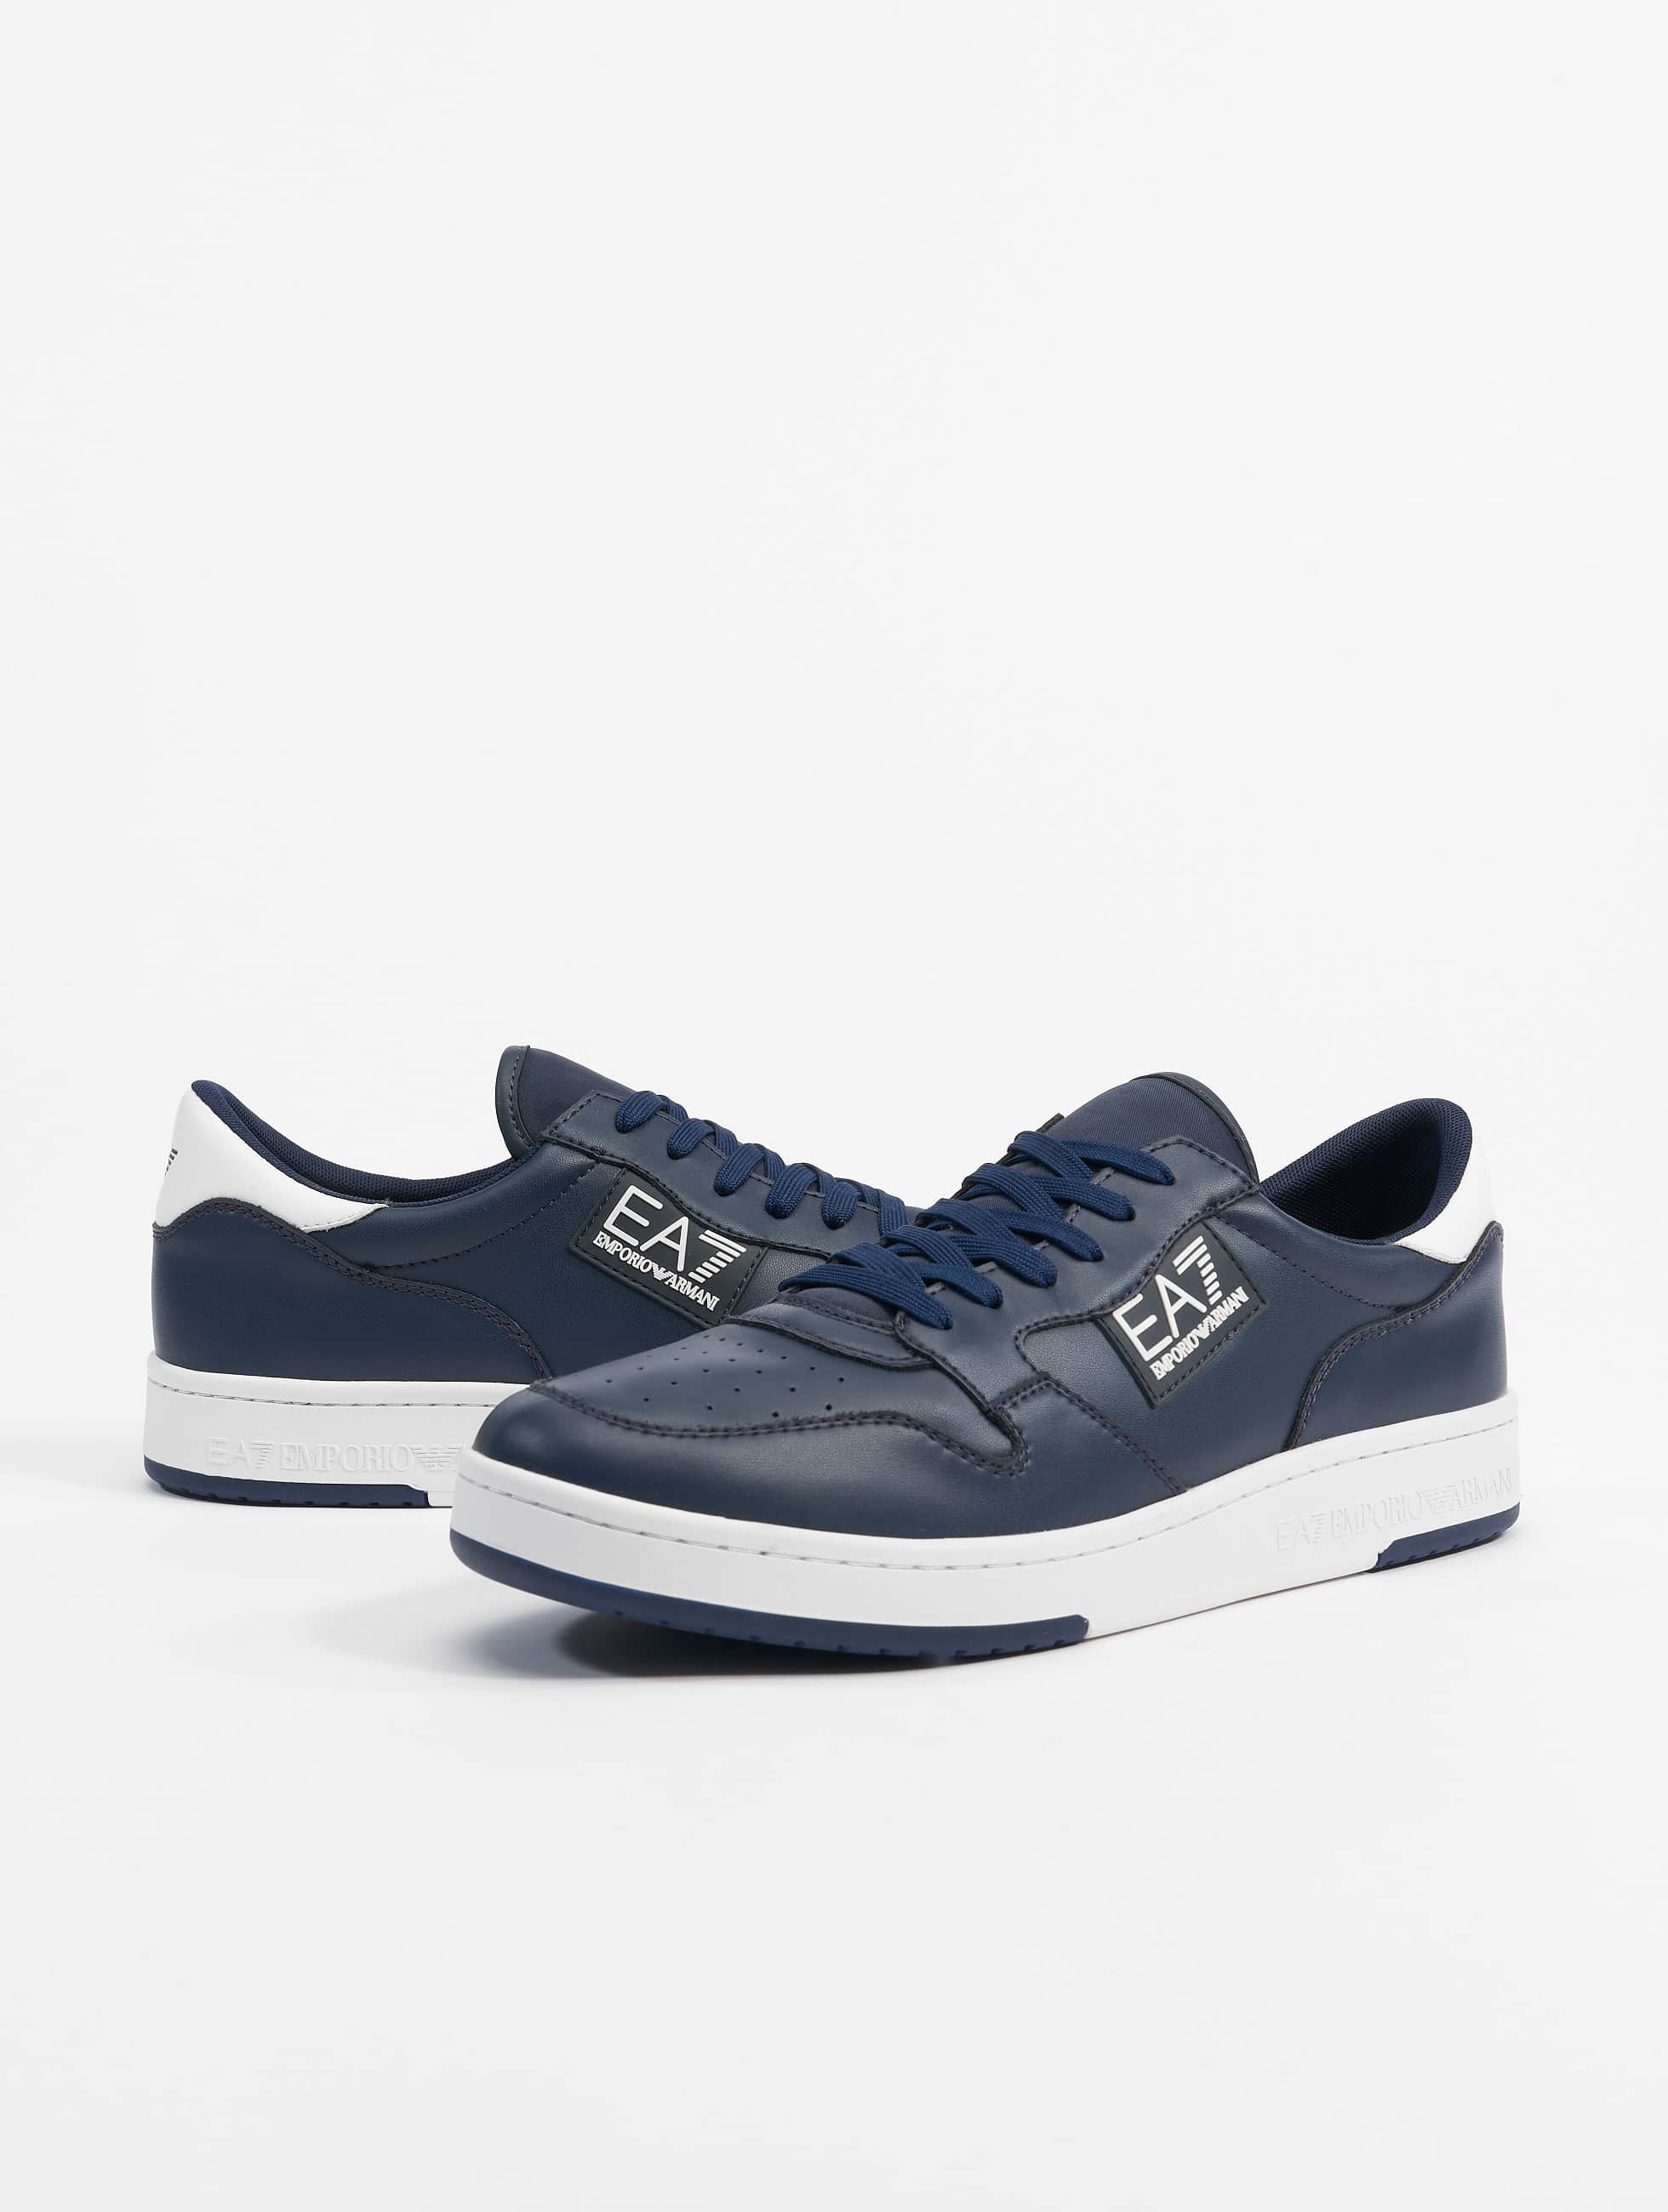 Relatieve grootte Treinstation titel Armani schoen / sneaker Basic EA7 in blauw 905432